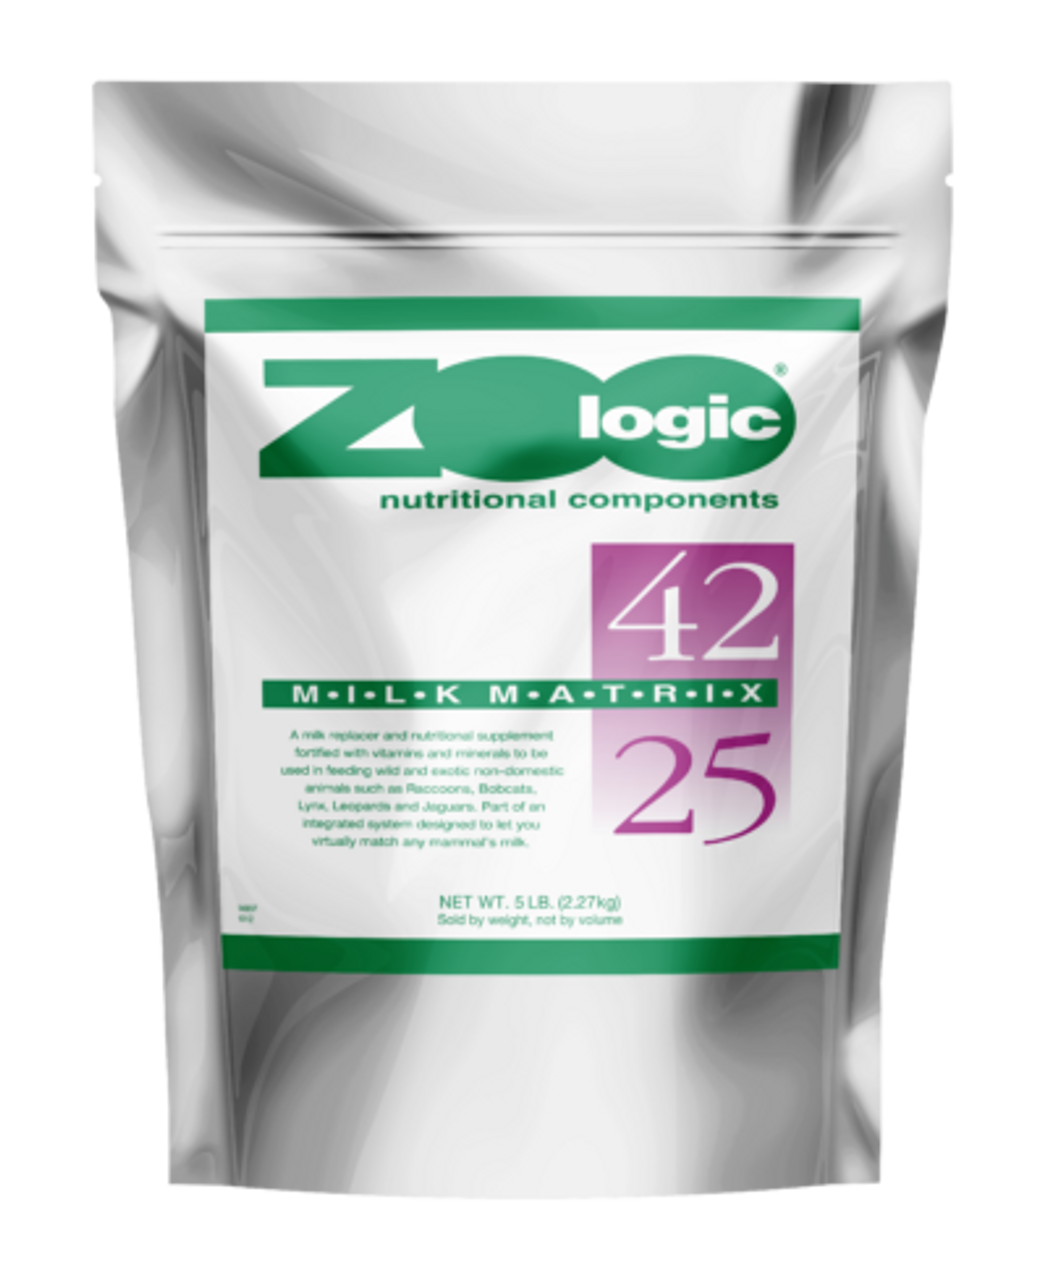 Zoologic milk matrix 42/25, milk replacer, formula, pet ag, raccoons